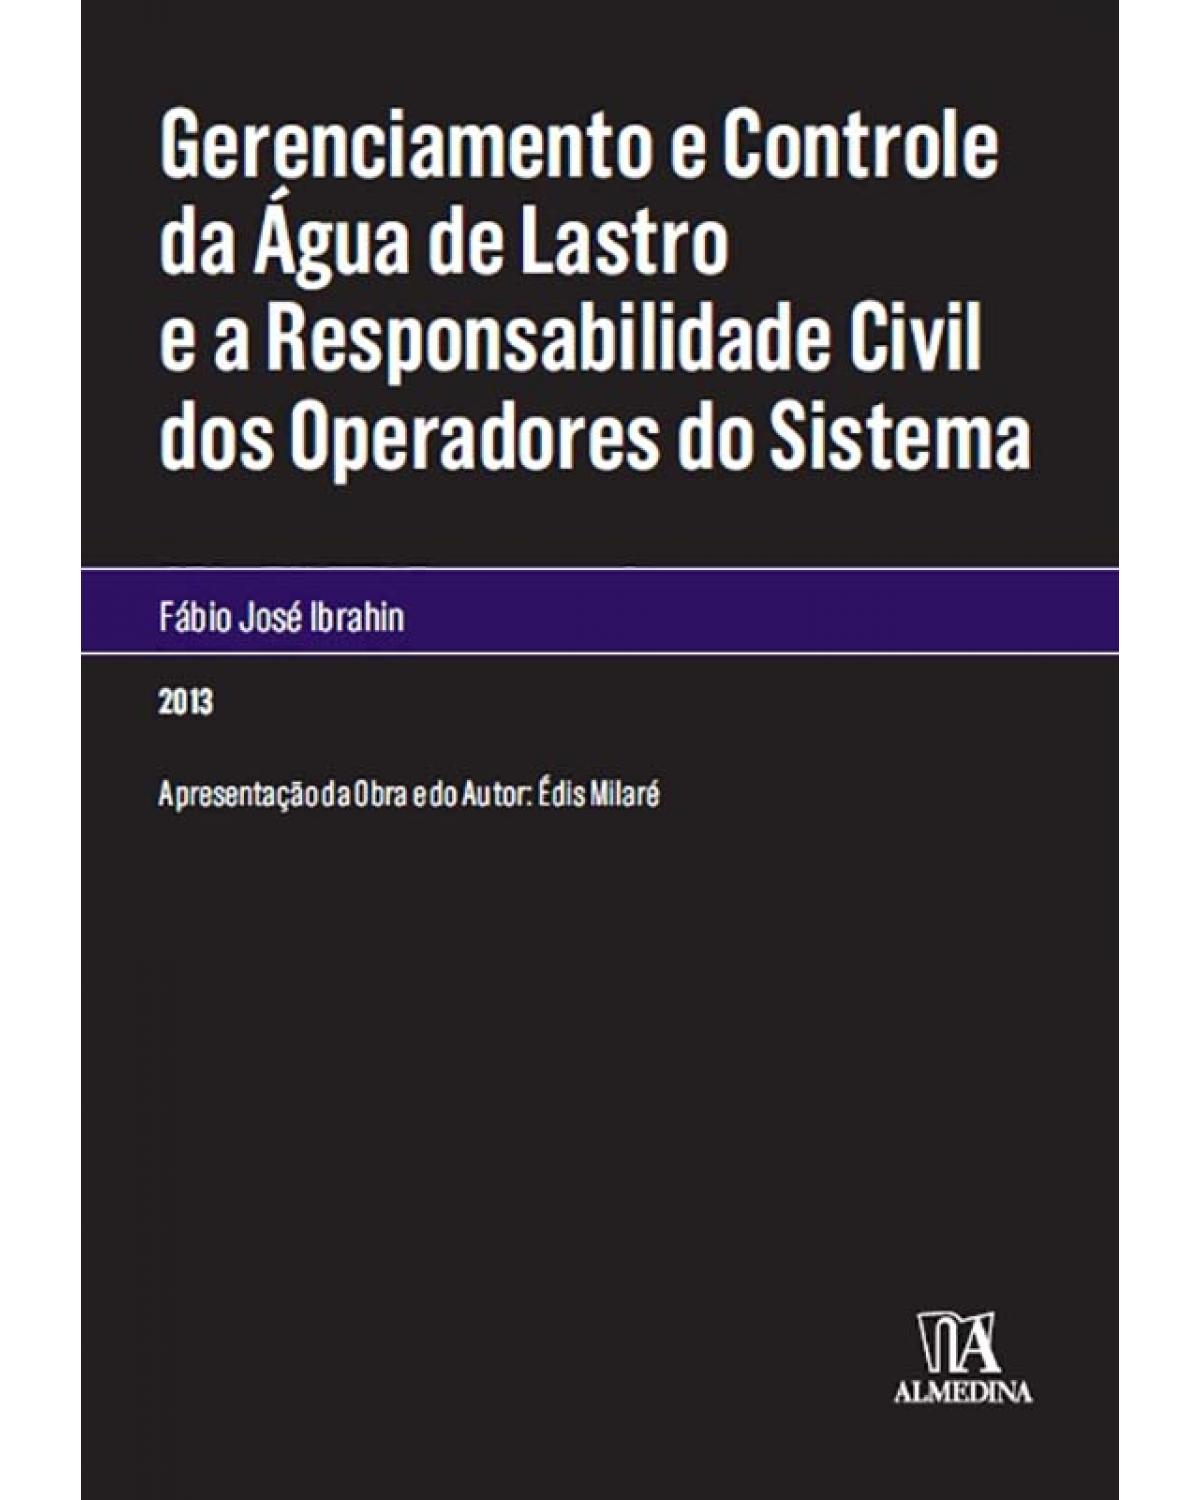 Gerenciamento e controle da água de lastro e a responsabilidade civil dos operadores do sistema - 1ª Edição | 2013